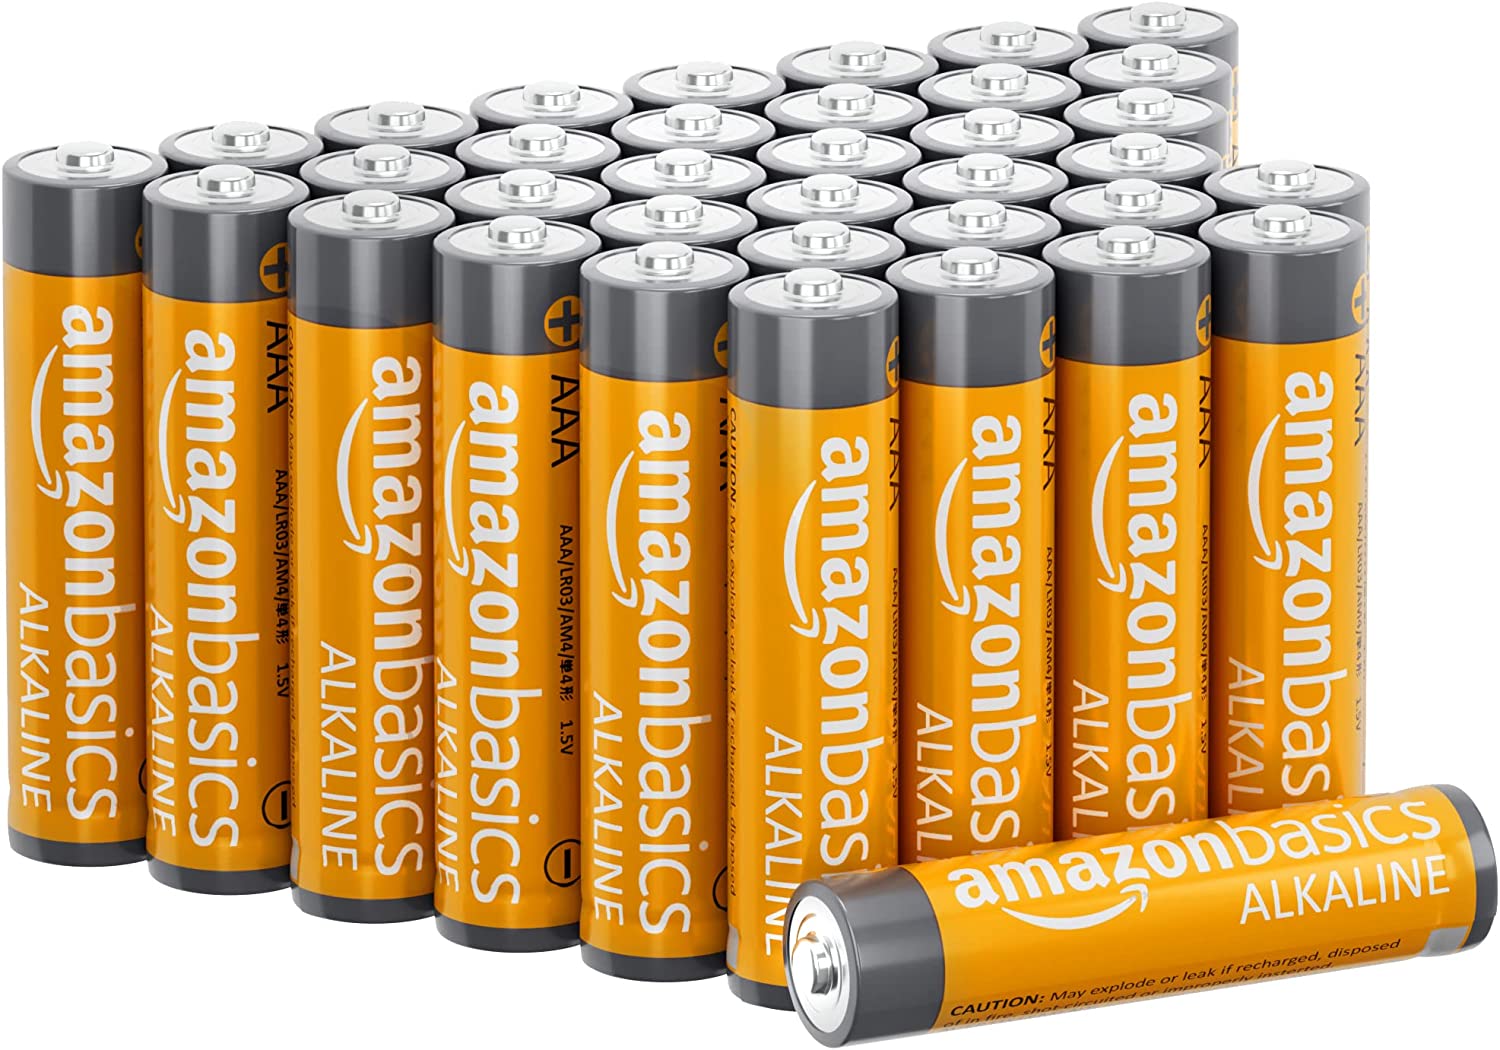 Amazon Basics Alkaline Multi-Device AAA Batteries, 36-Pack